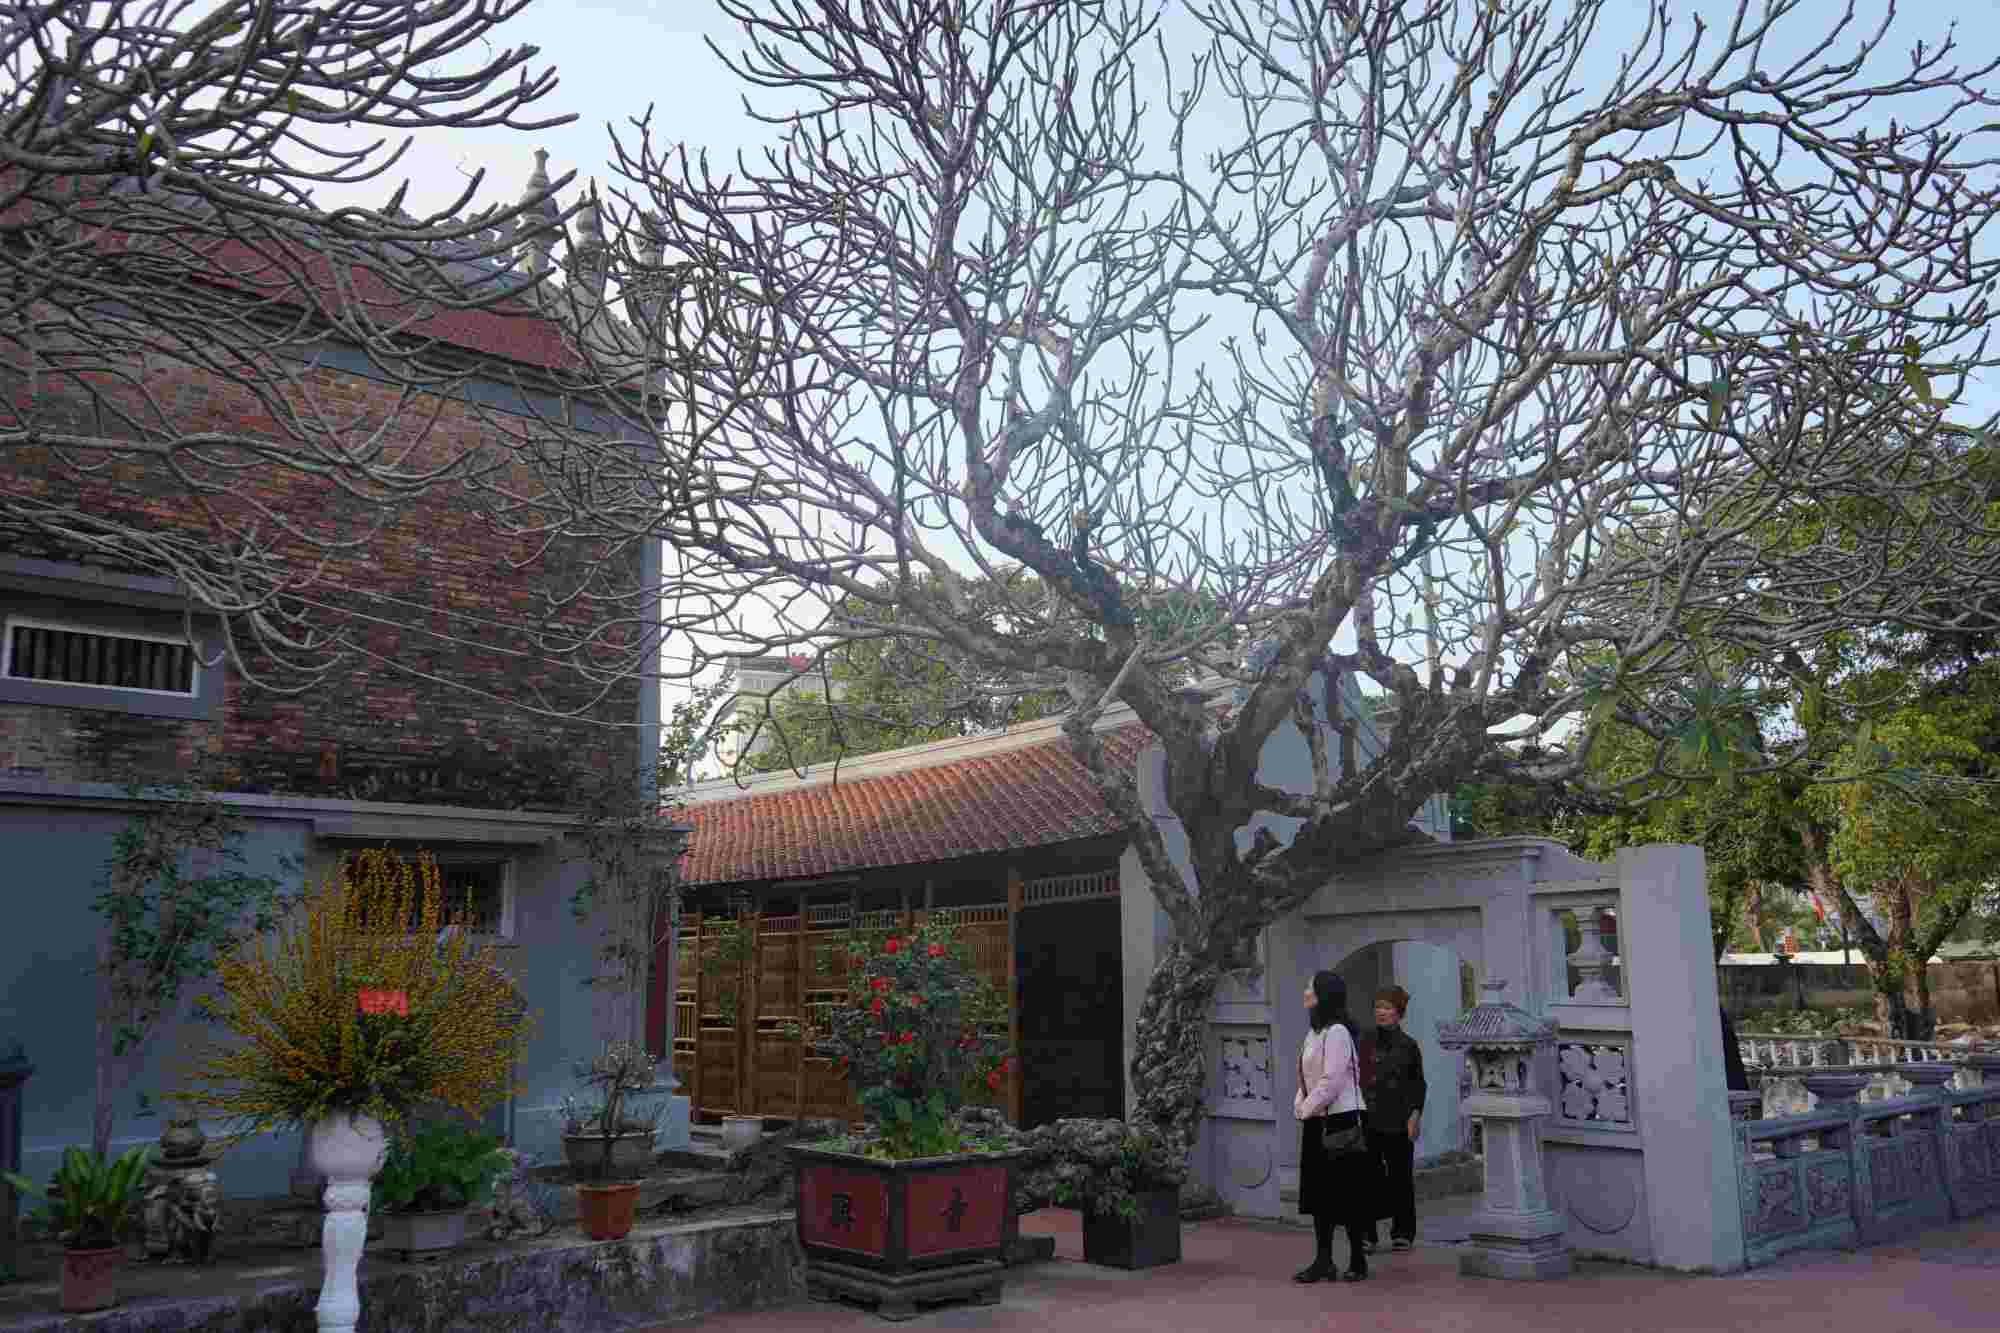 Trong khuôn viên chùa có hệ thống cây cổ thụ, trong đó nổi tiếng là cây gạo hoa đỏ và hệ thống cây đại hoa trắng có dáng hình độc lạ, tán vươn rộng hàng trăm mét. 